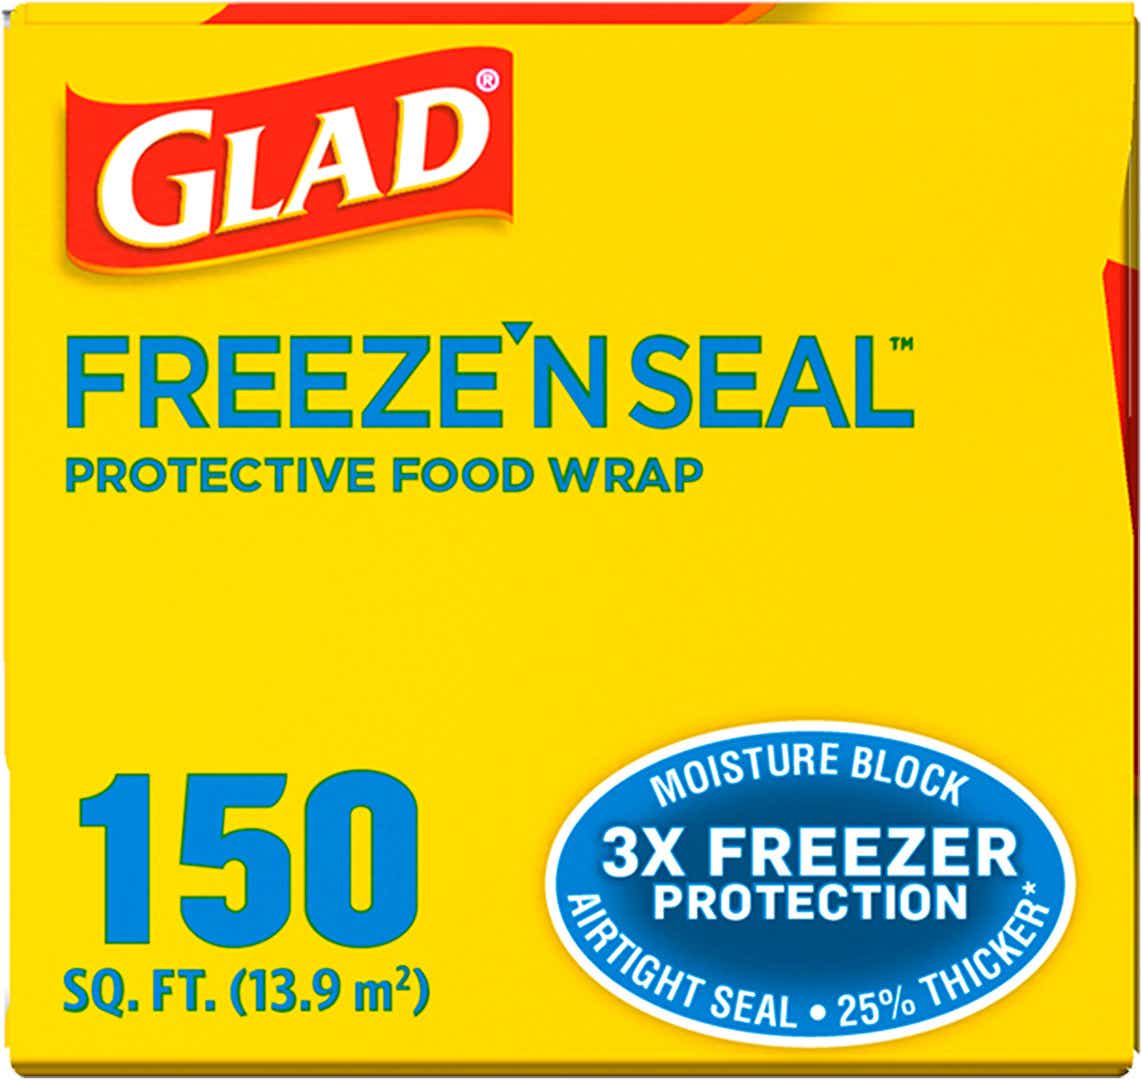 Glad Press'n Seal - 50 Sq Ft : Target